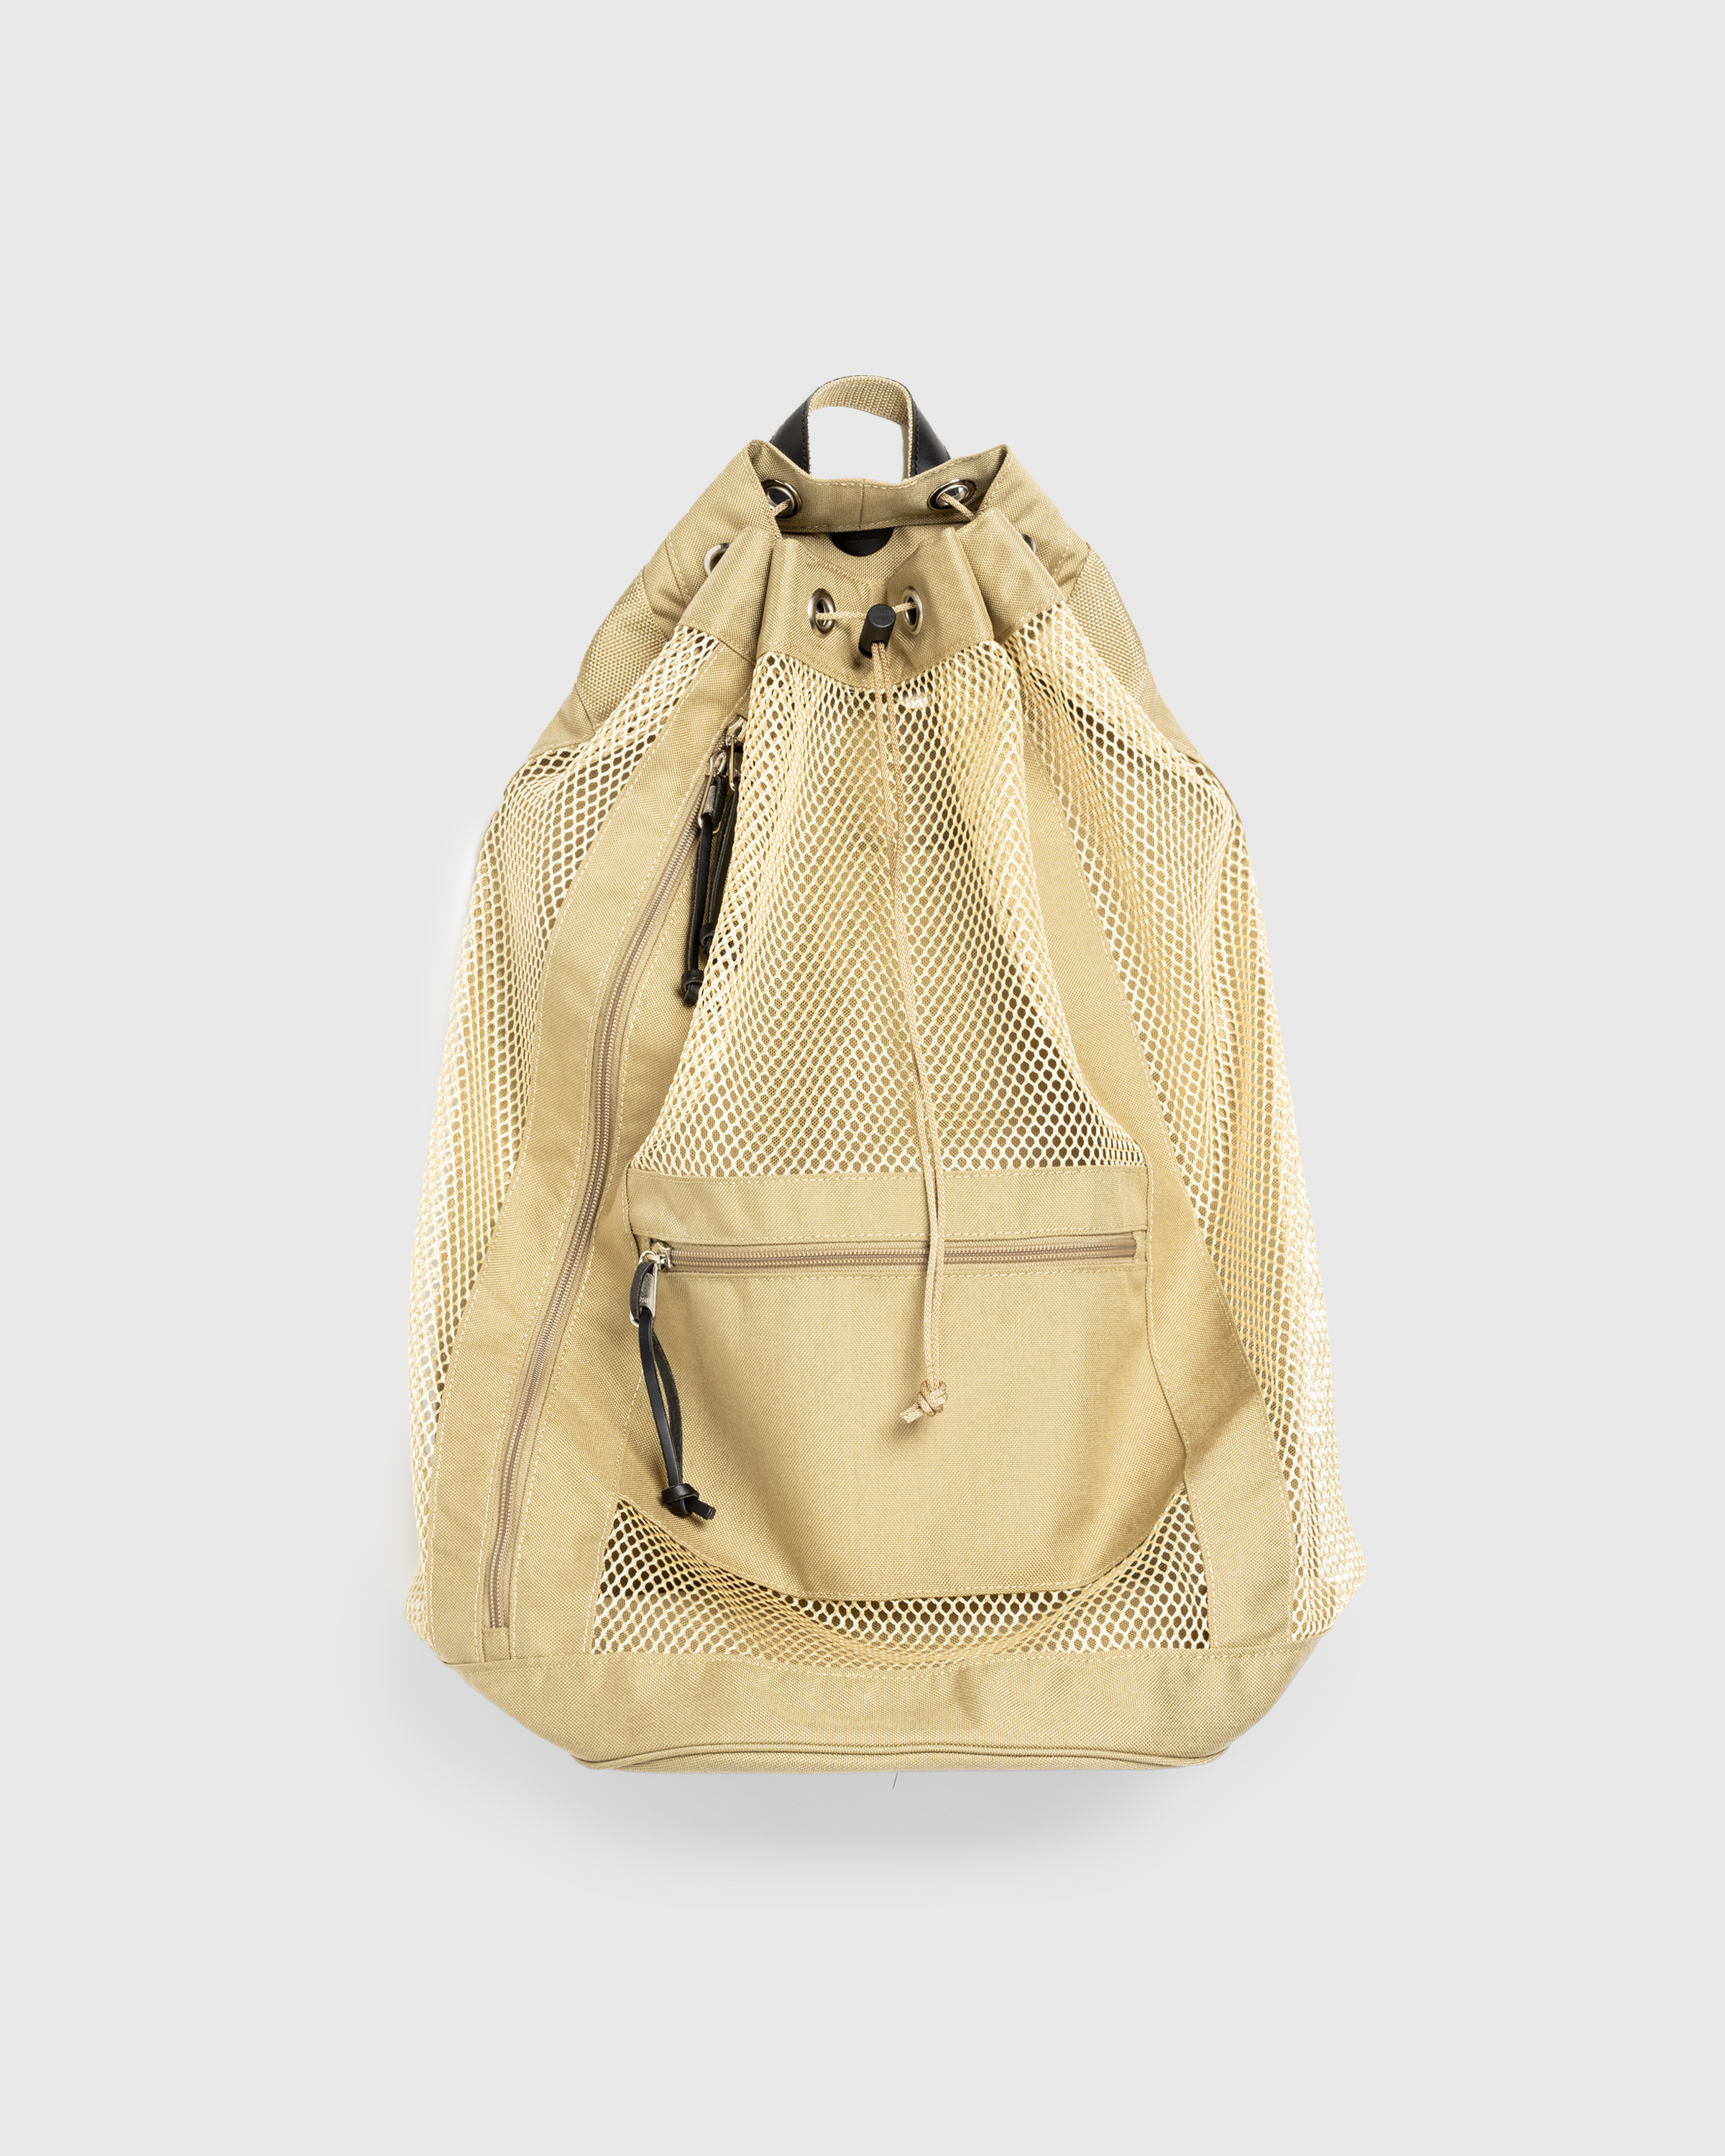 Auralee – Mesh Large Backpack Made By Aeta Beige - Bags - Beige - Image 1